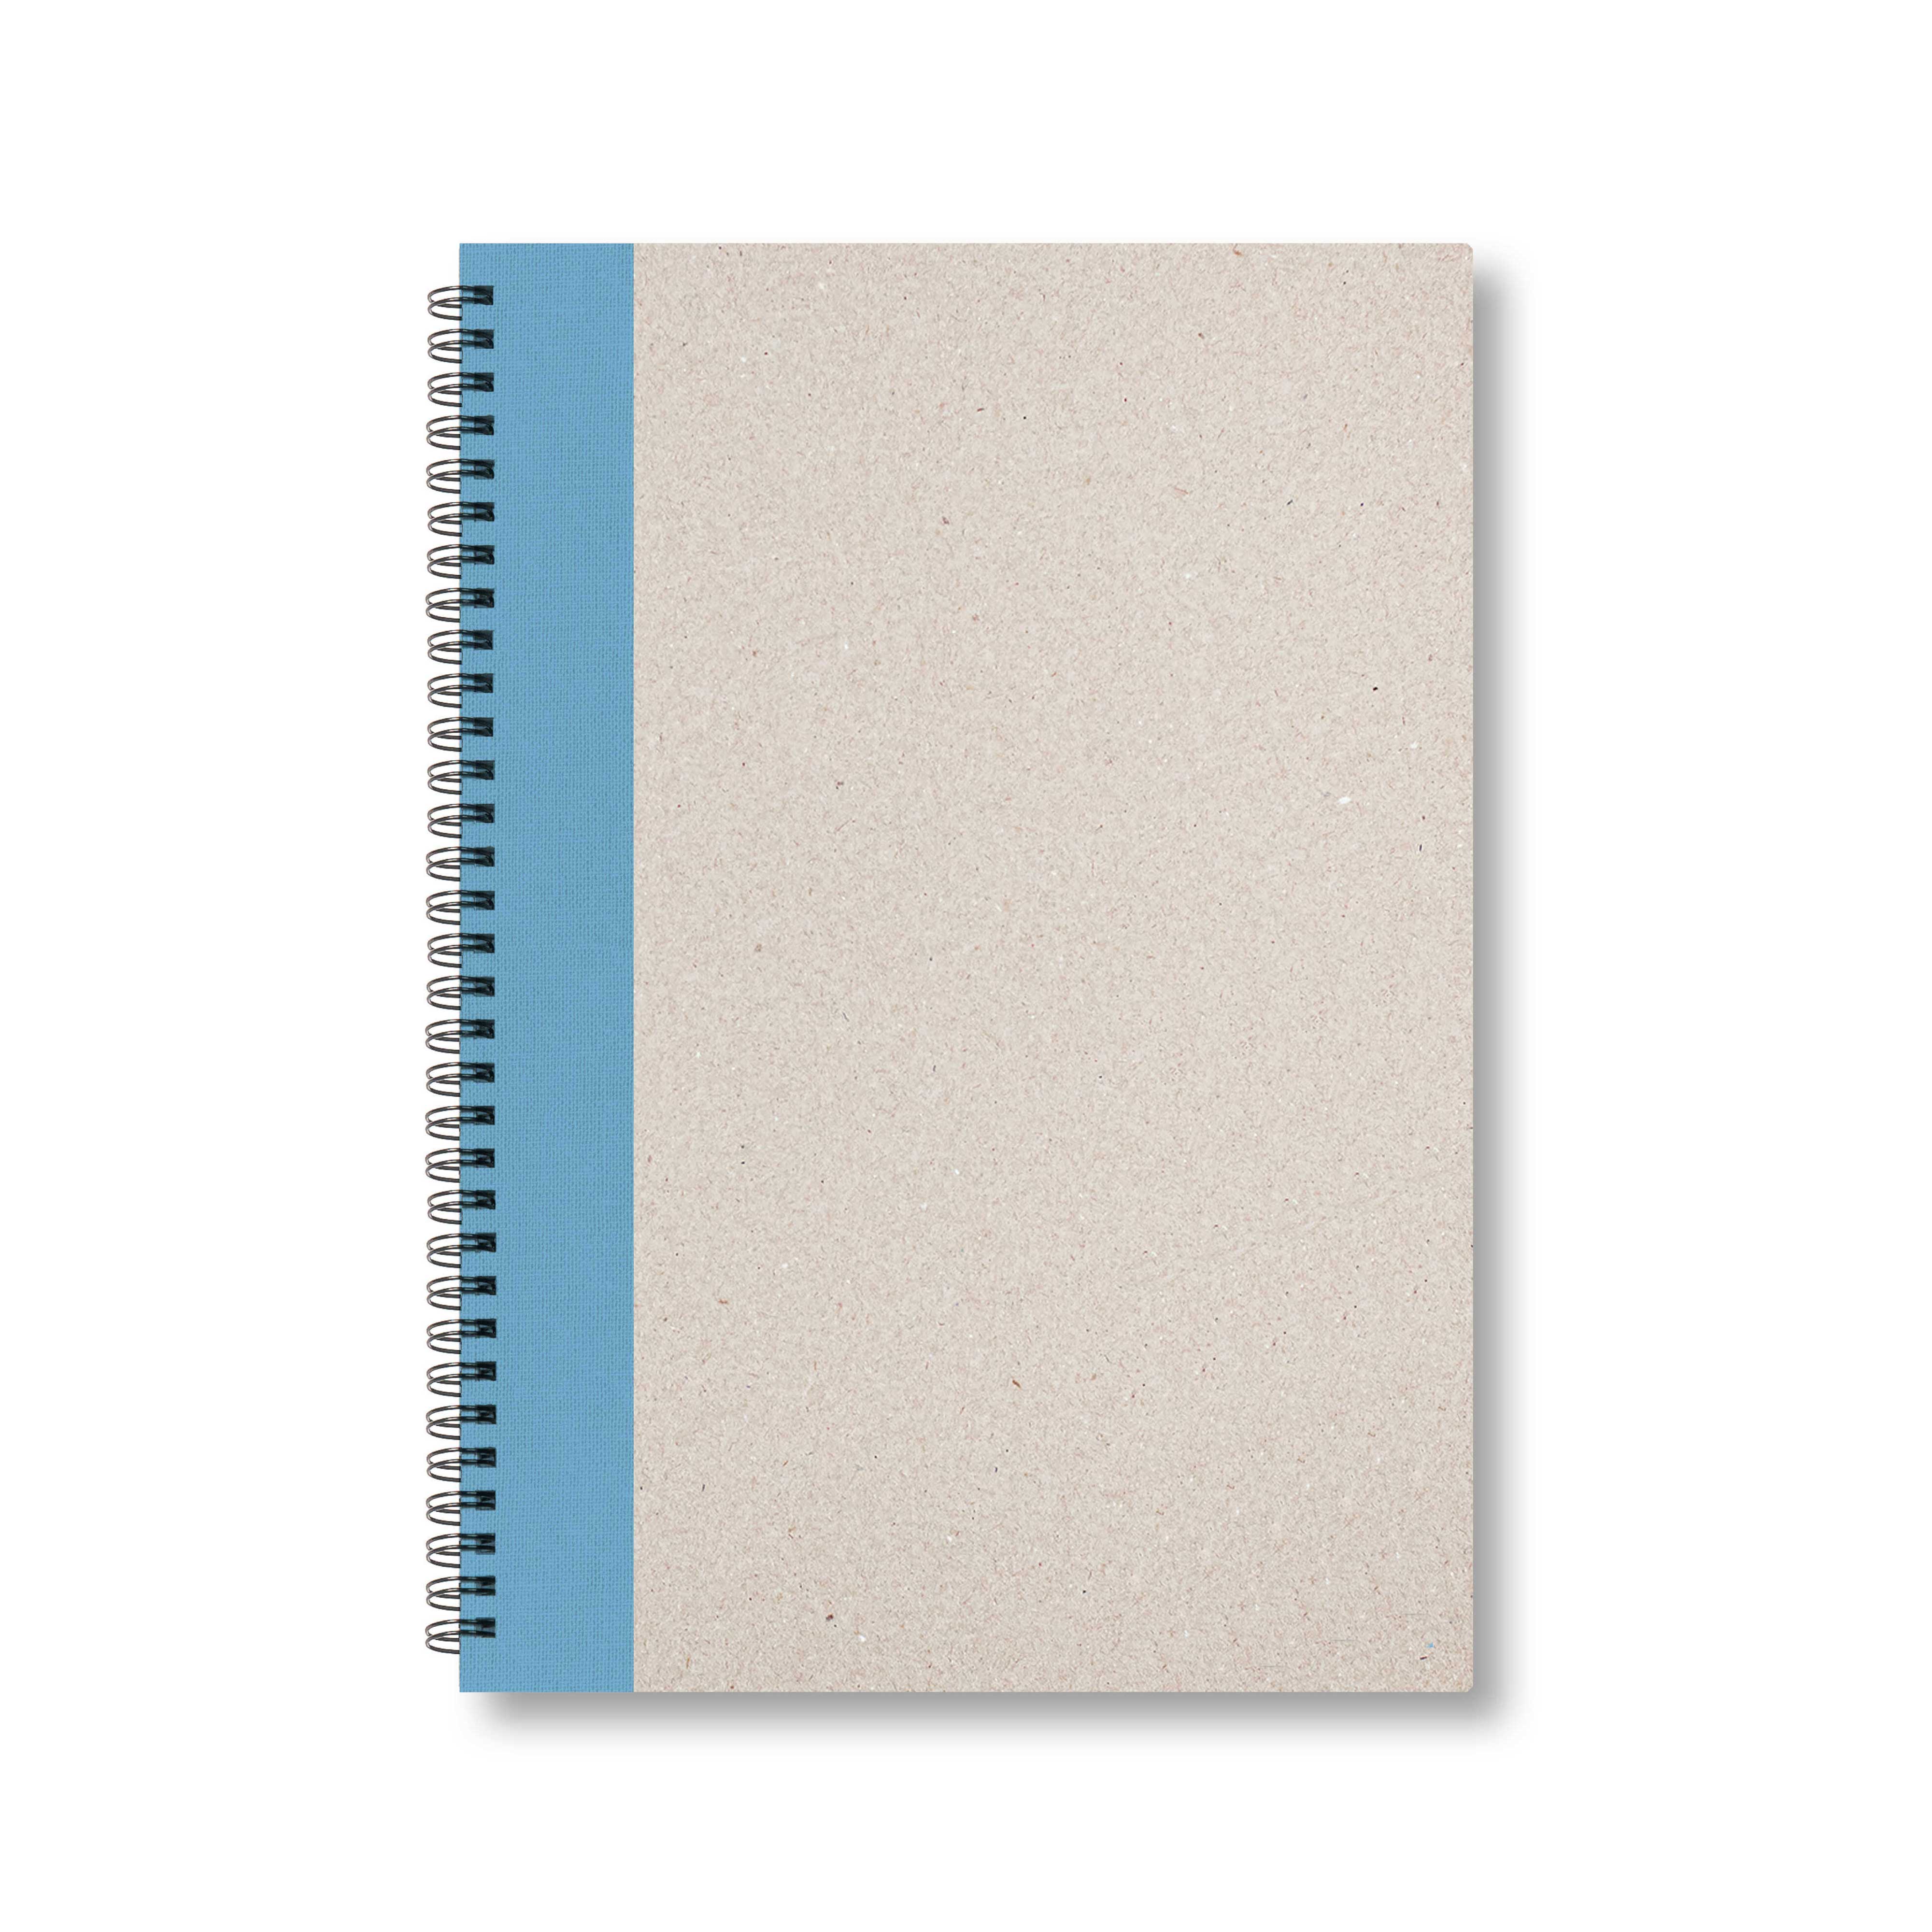 BOBO Zápisník, B5, čistý, světle modrý, konfiguruj si obálku